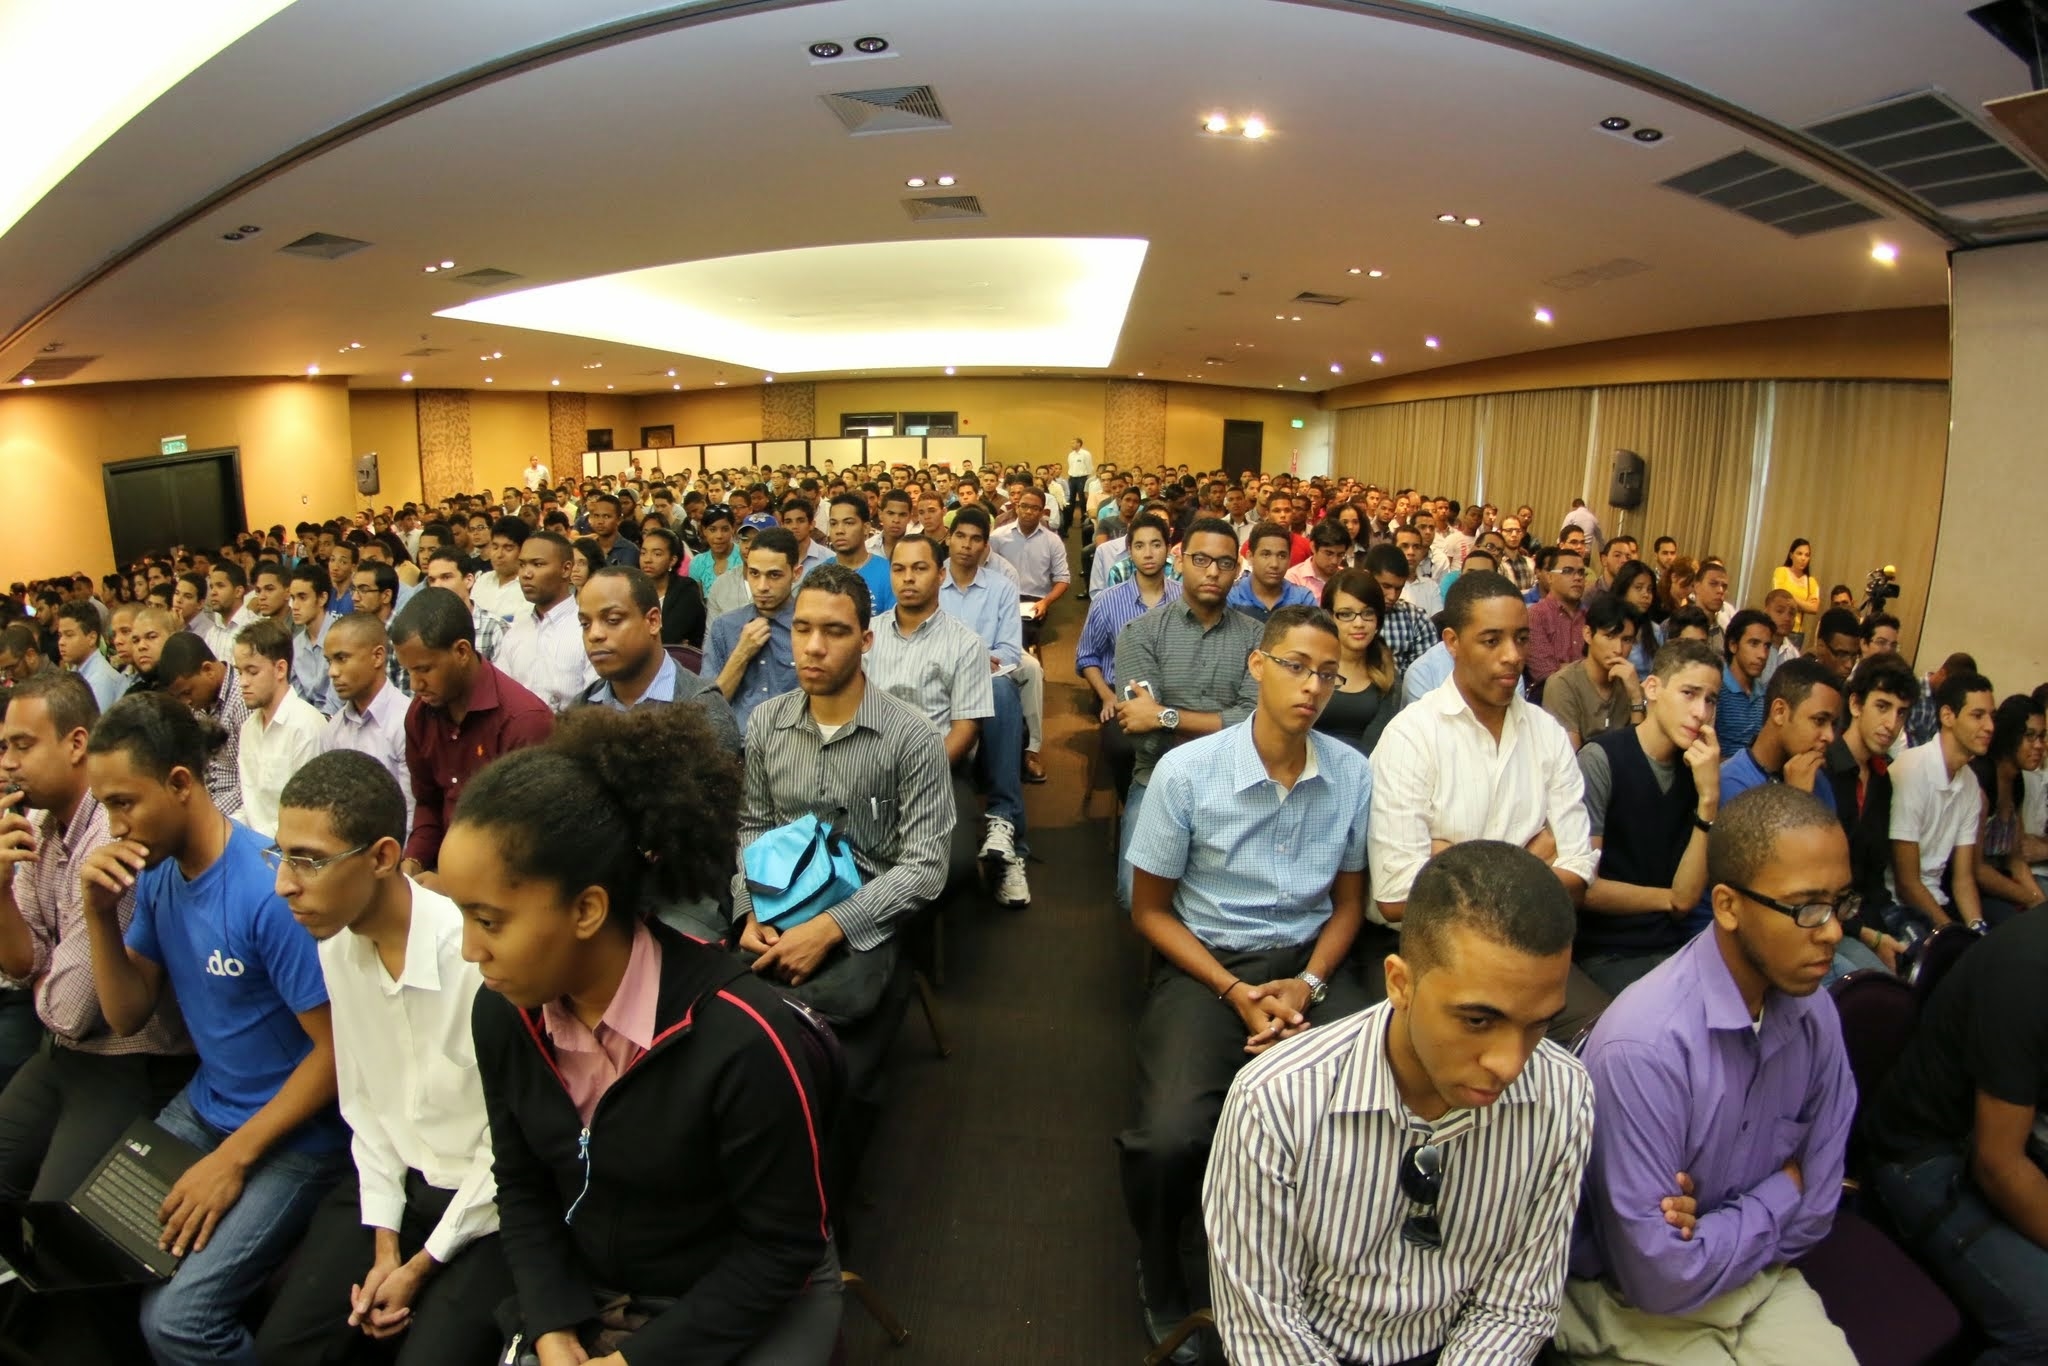 Este 1er Congreso Internacional de Informática fue realizado en el Salón La Mancha, del Hotel Barceló Santo Domingo.